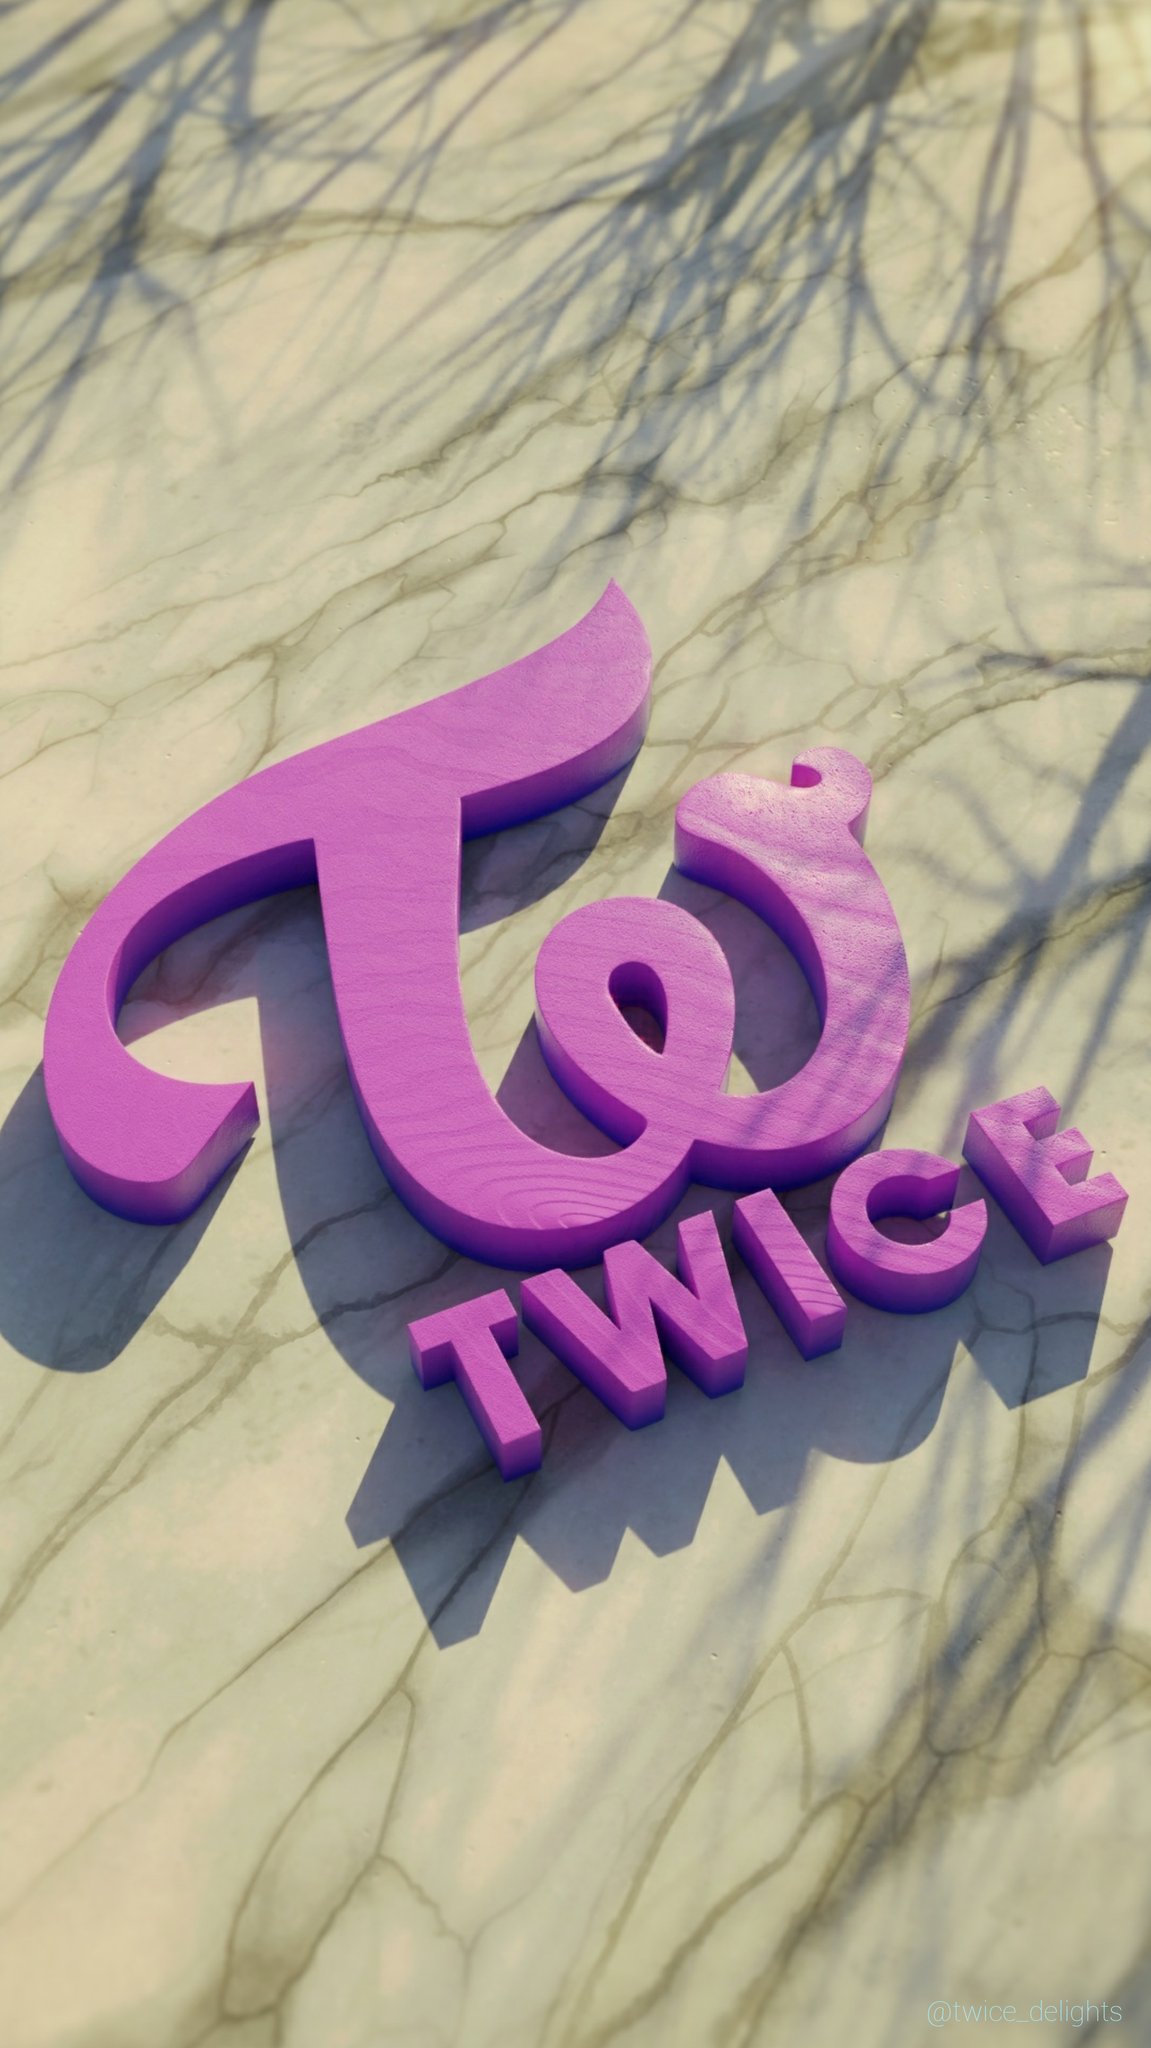 Twice_delights on X: Twice logo scenery wallpaper #b3d #twice3d #twice  #wallpaper #트와이스  / X